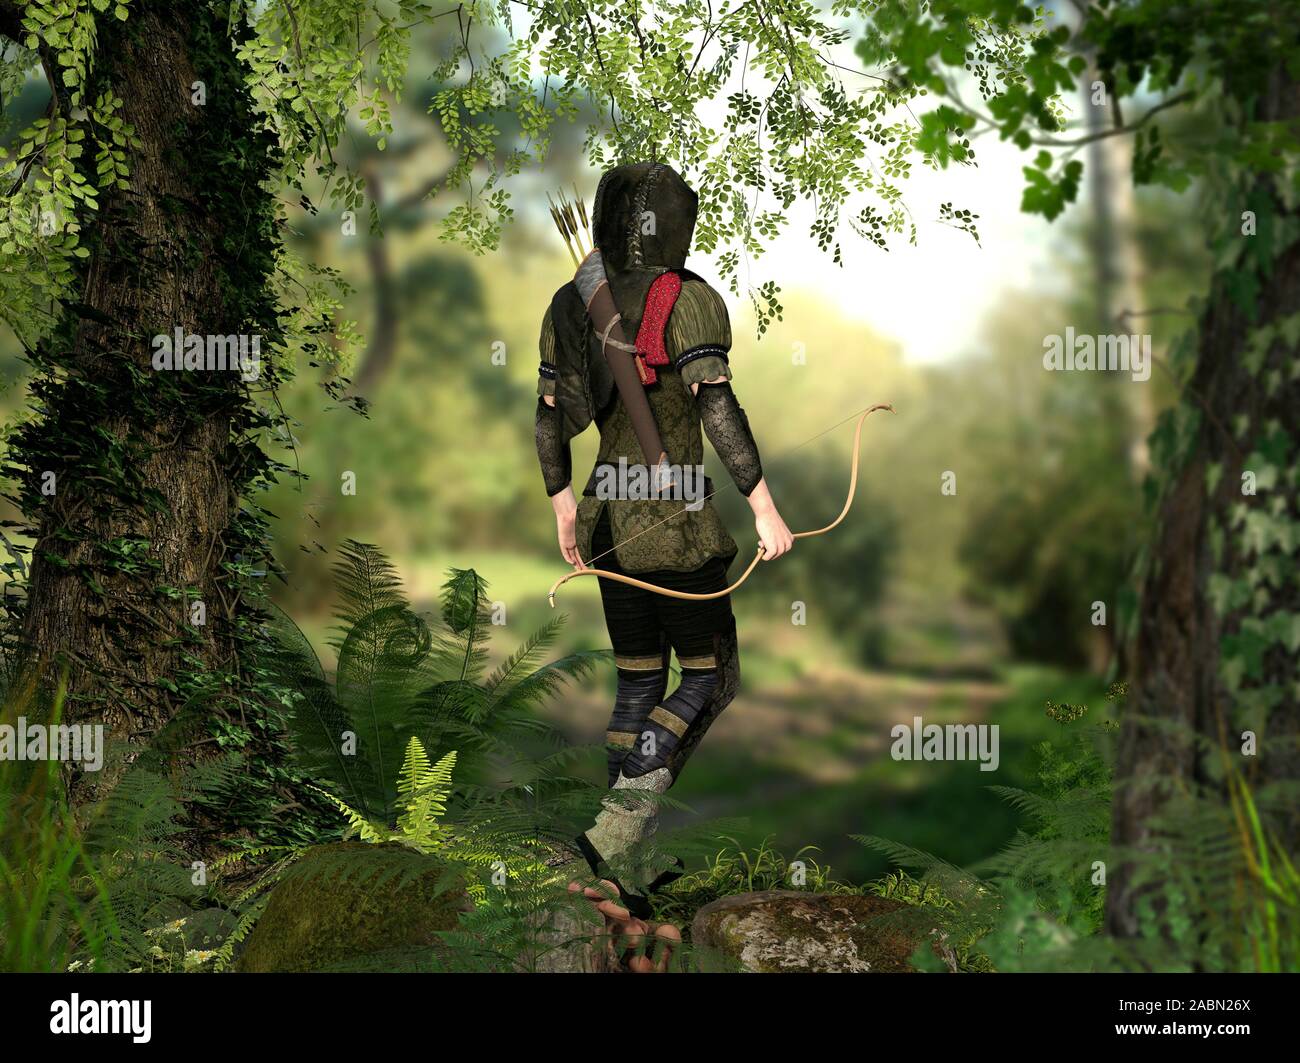 Eine Kapuze, Jäger mit Pfeil und Bogen Spaziergänge durch einen tiefen Wald, 3d-render Elemente Stockfoto